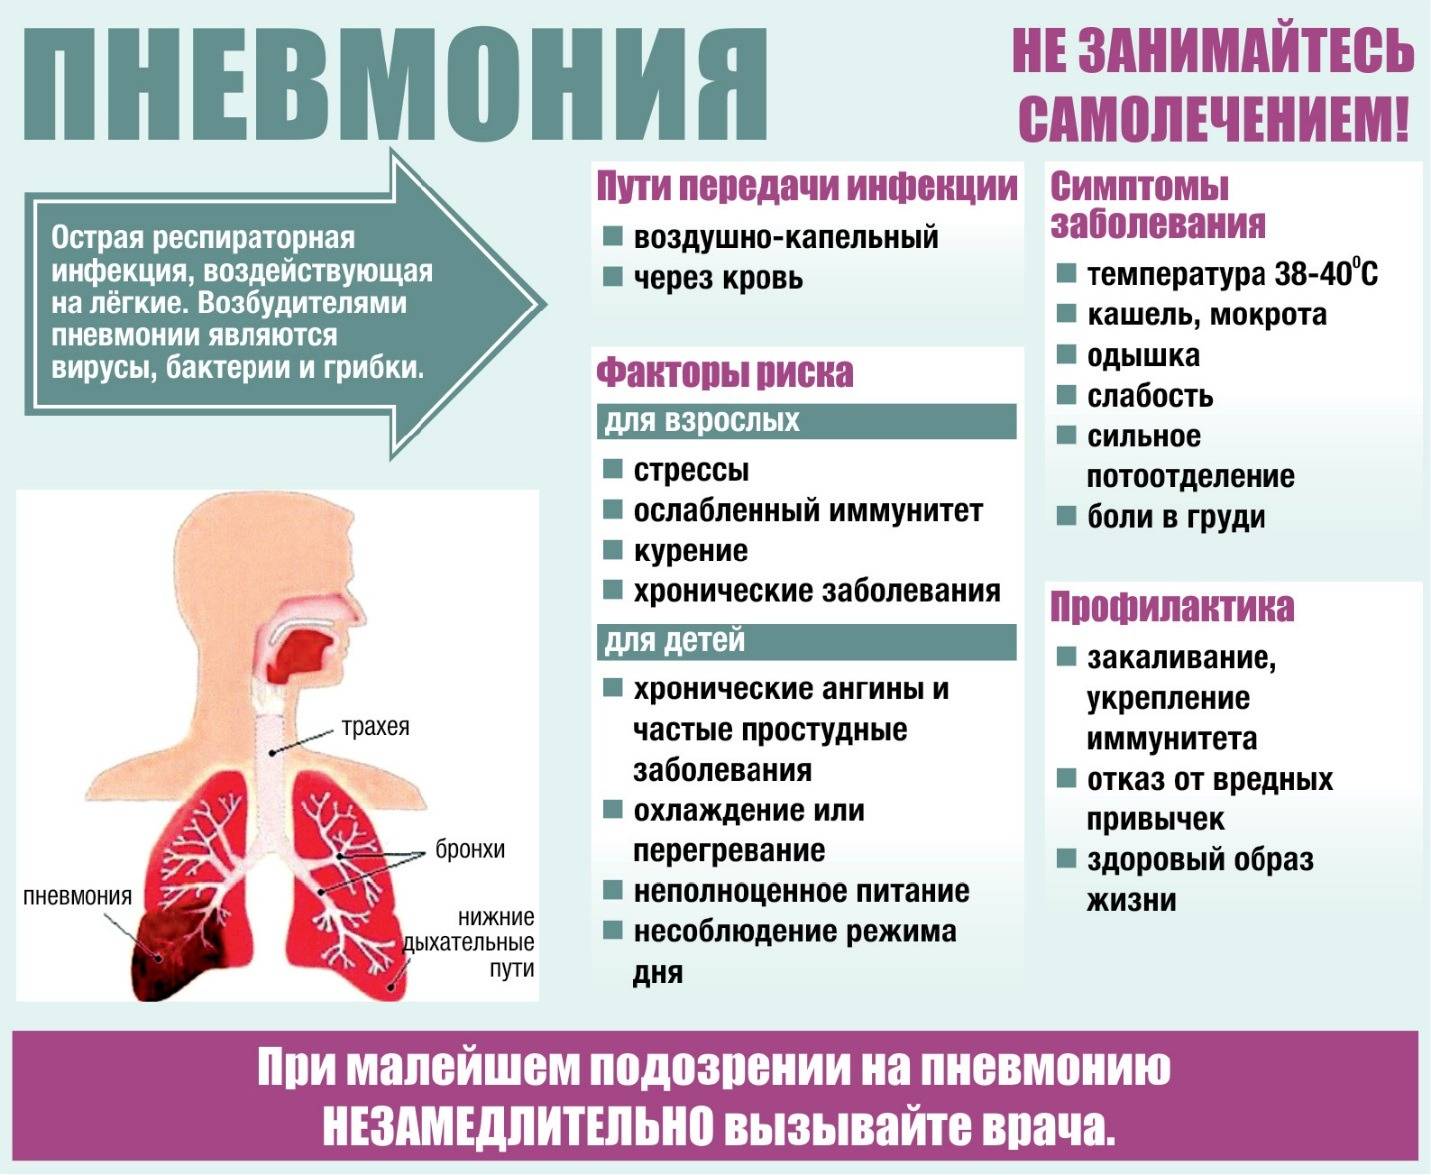 Пневмония: опасности, симптомы, профилактика и лечение -  биографии и справки - тасс